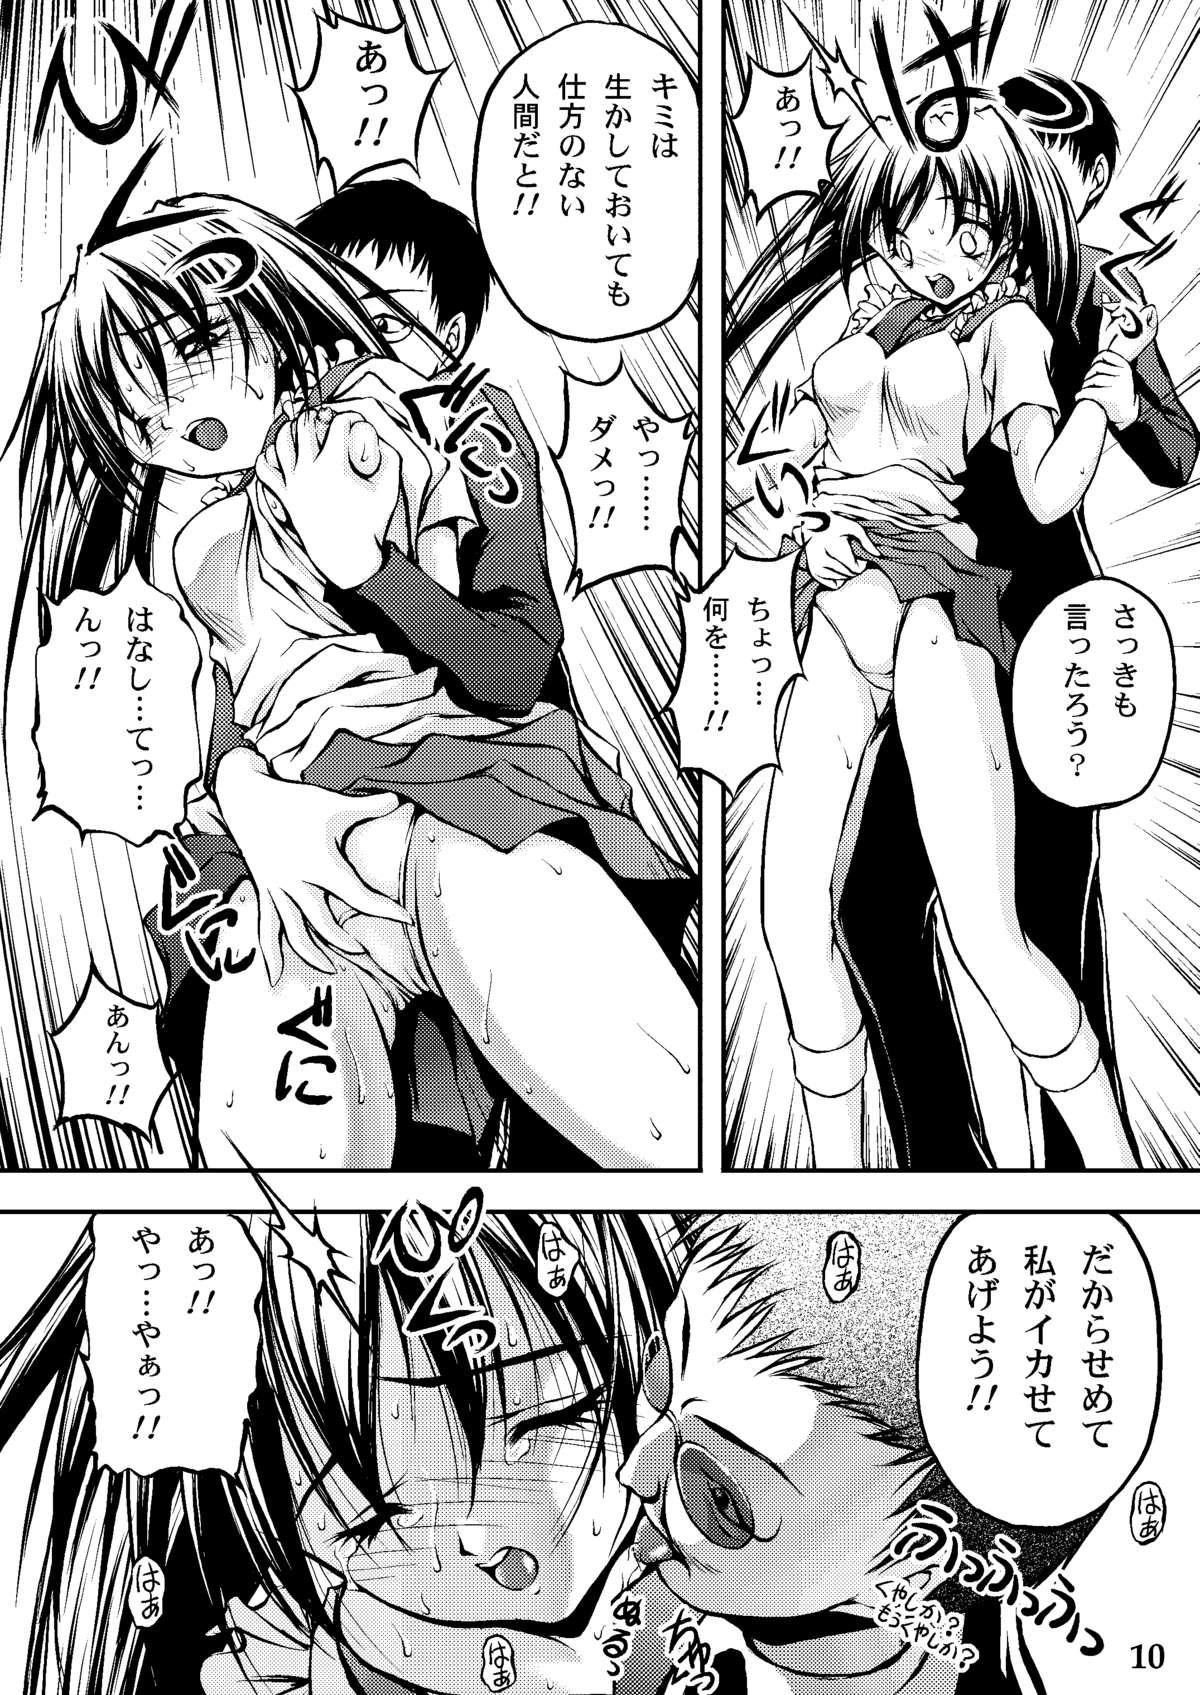 Chacal Tengoku ni Ichiban Chikai Onna - Narue no sekai Solo Female - Page 8